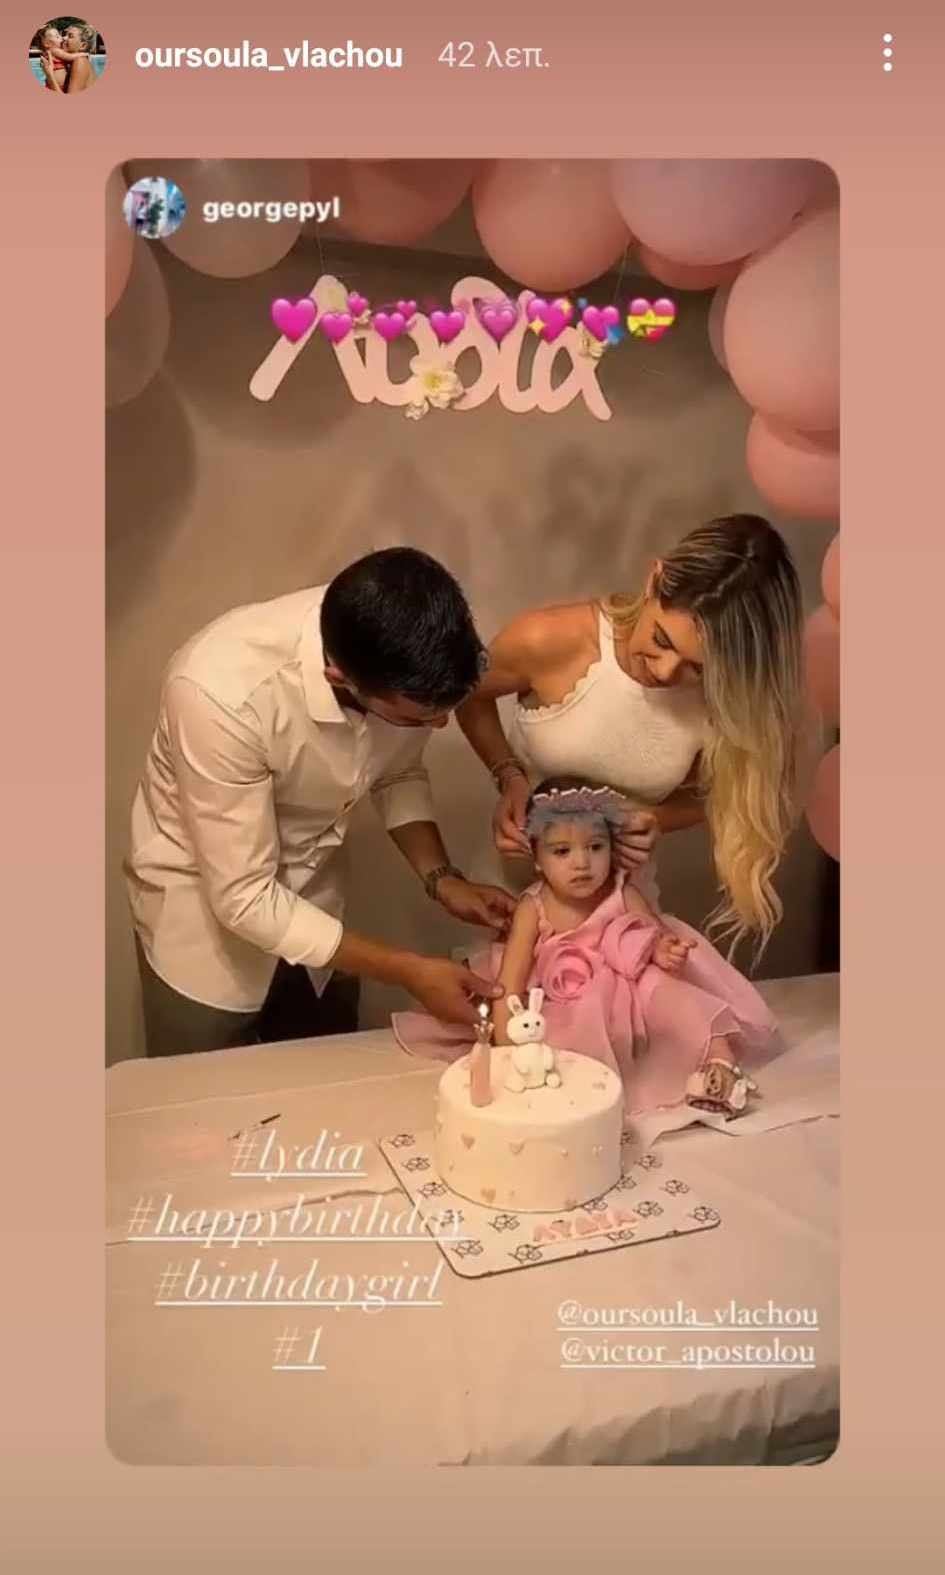 Ούρσουλα Βλάχου: Η «κόρη» του Πάνου Μιχαλόπουλου γιόρτασε τα πρώτα γενέθλια της κόρης της με ένα εντυπωσιακό πάρτι – Κουκλίτσα η μικρή